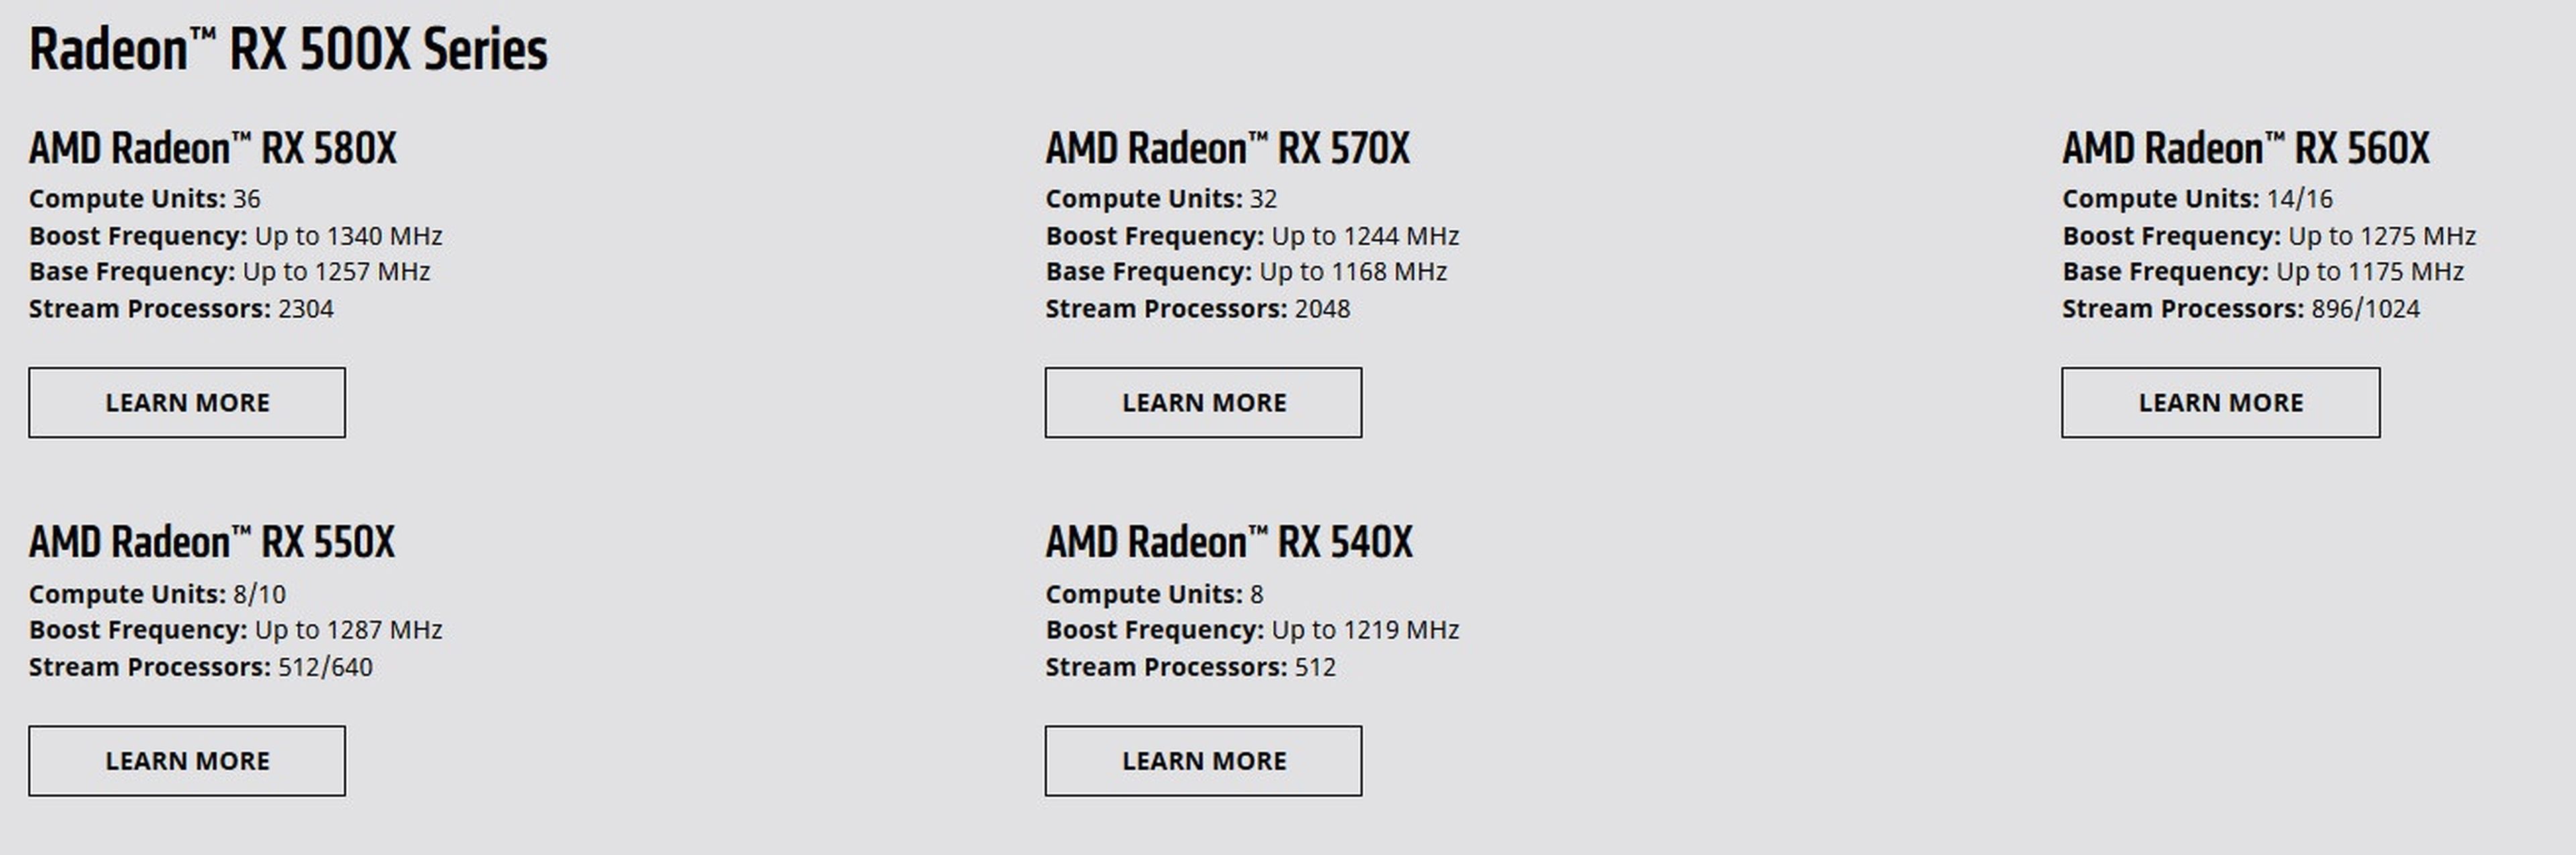 Por qué las gráficas AMD RX 500X están destinadas a portátiles